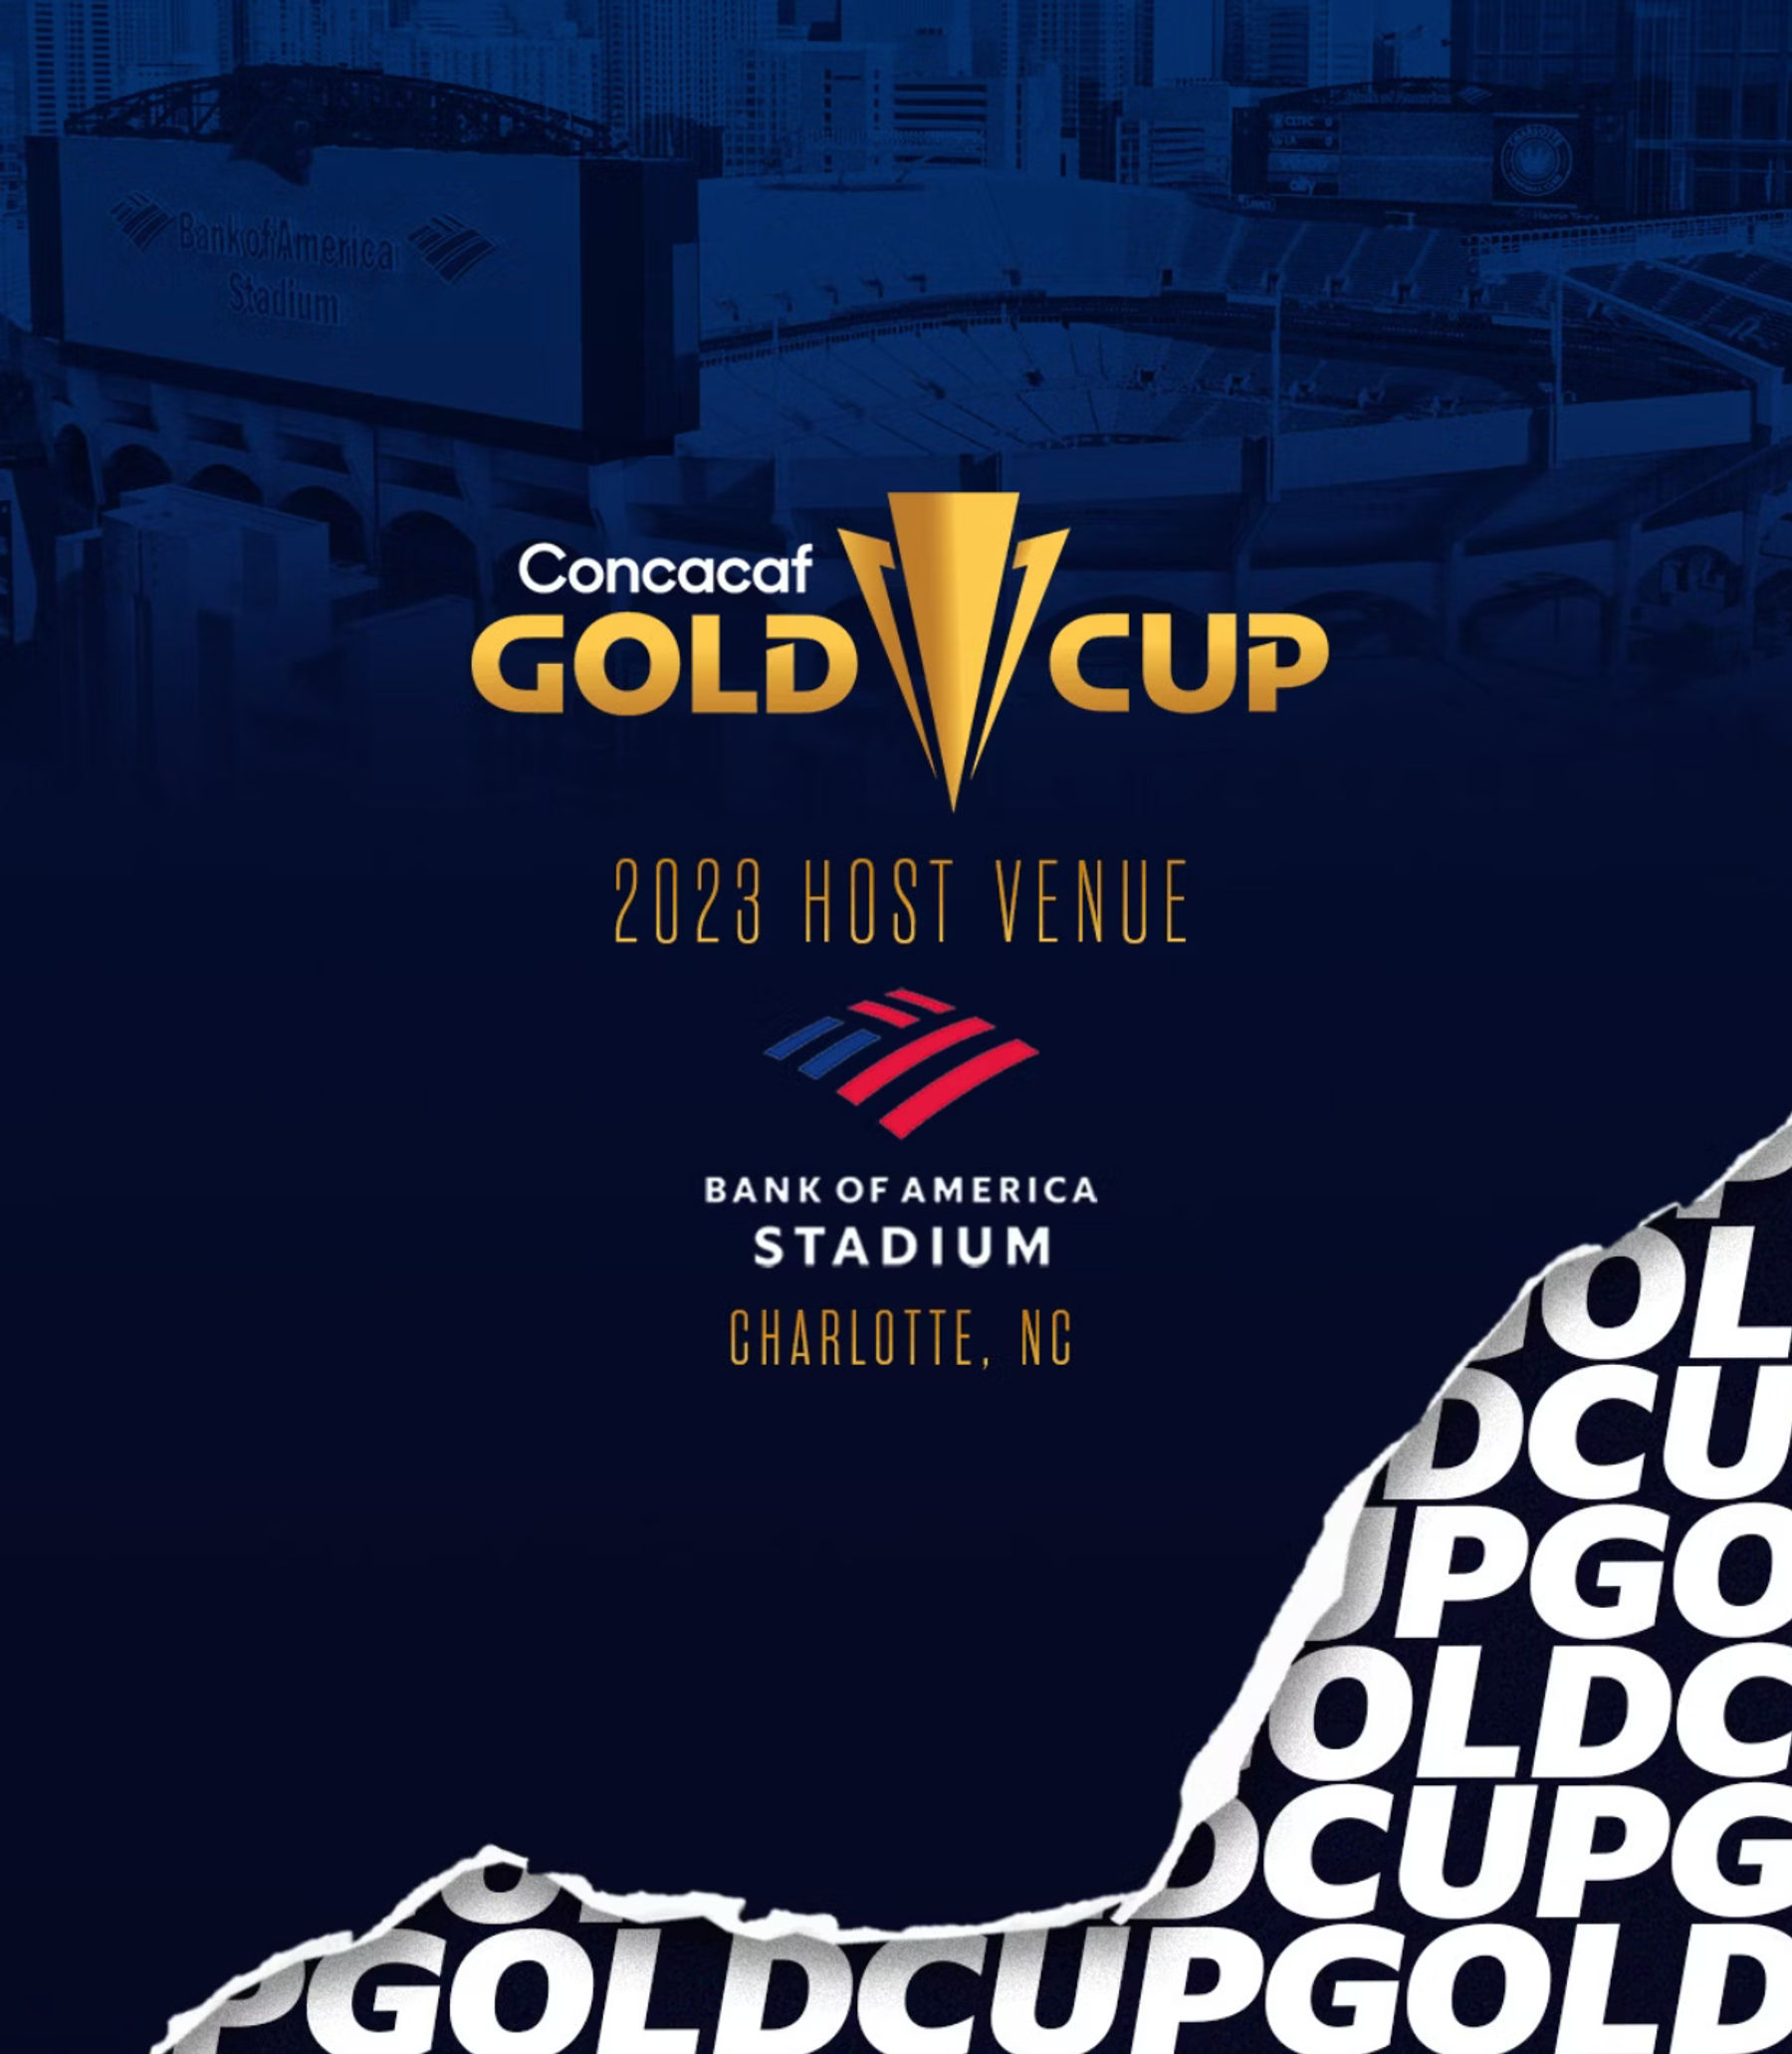 Concacaf Gold Cup 2023 Honduras v. Haiti Uptown Charlotte, NC